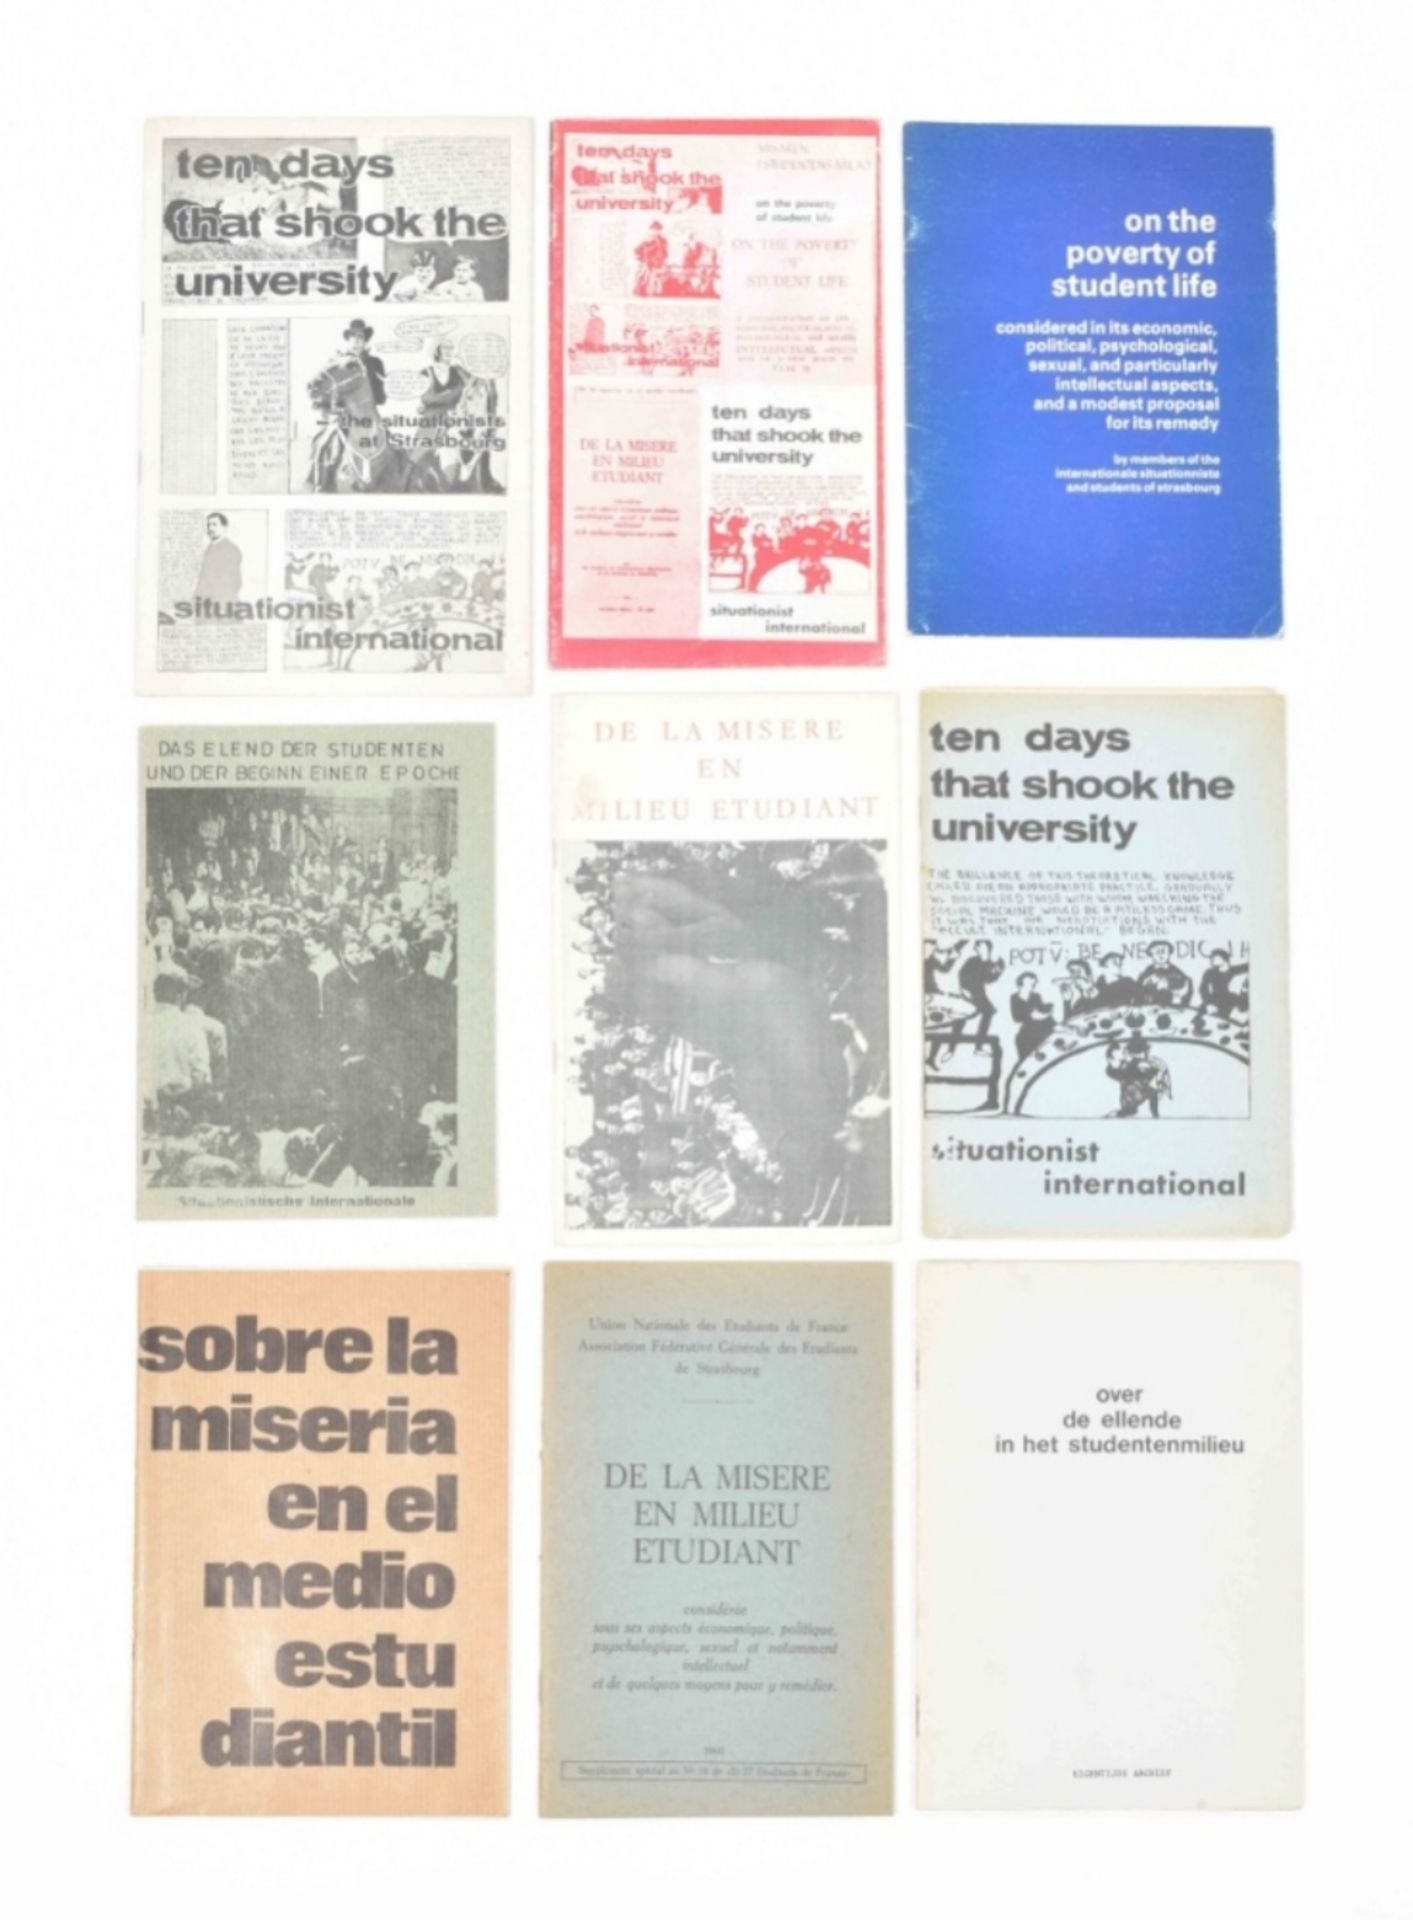 [Situationists] Various editions of De la Misere en Milieu Etudiant/